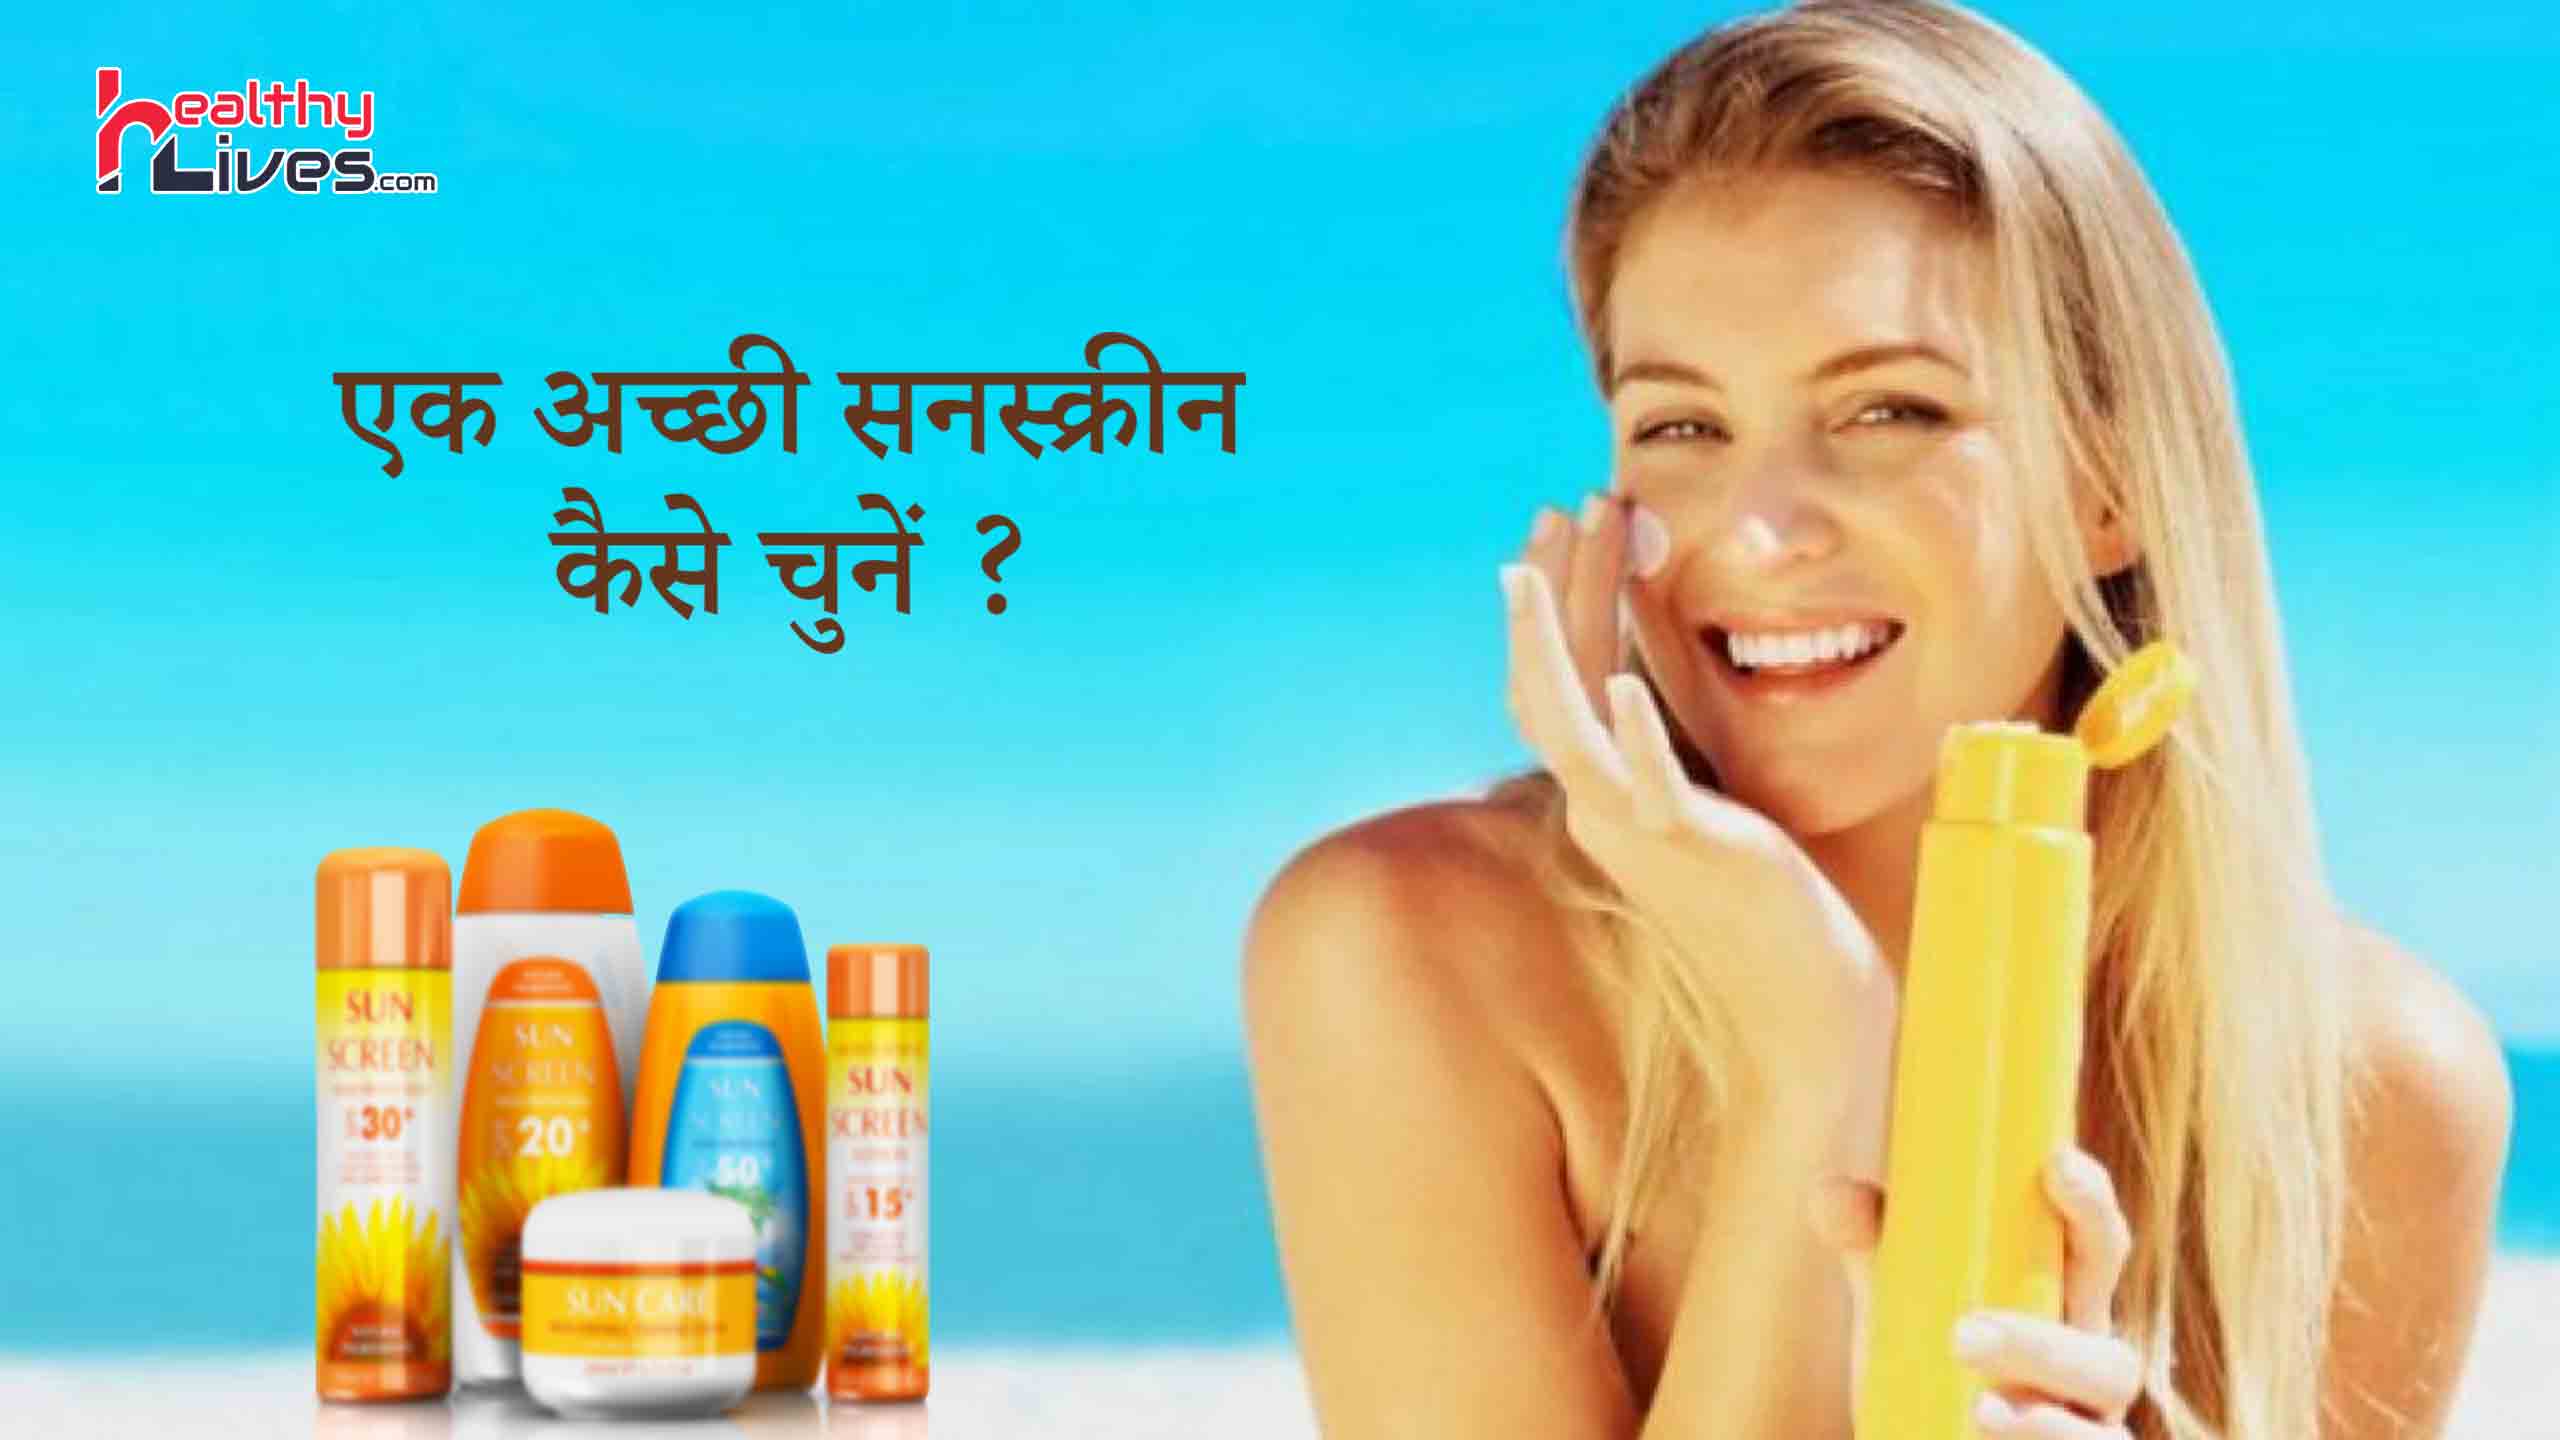 How to Choose Sunscreen: त्वचा के अनुरूप सही सनस्क्रीन कैसे चुने?